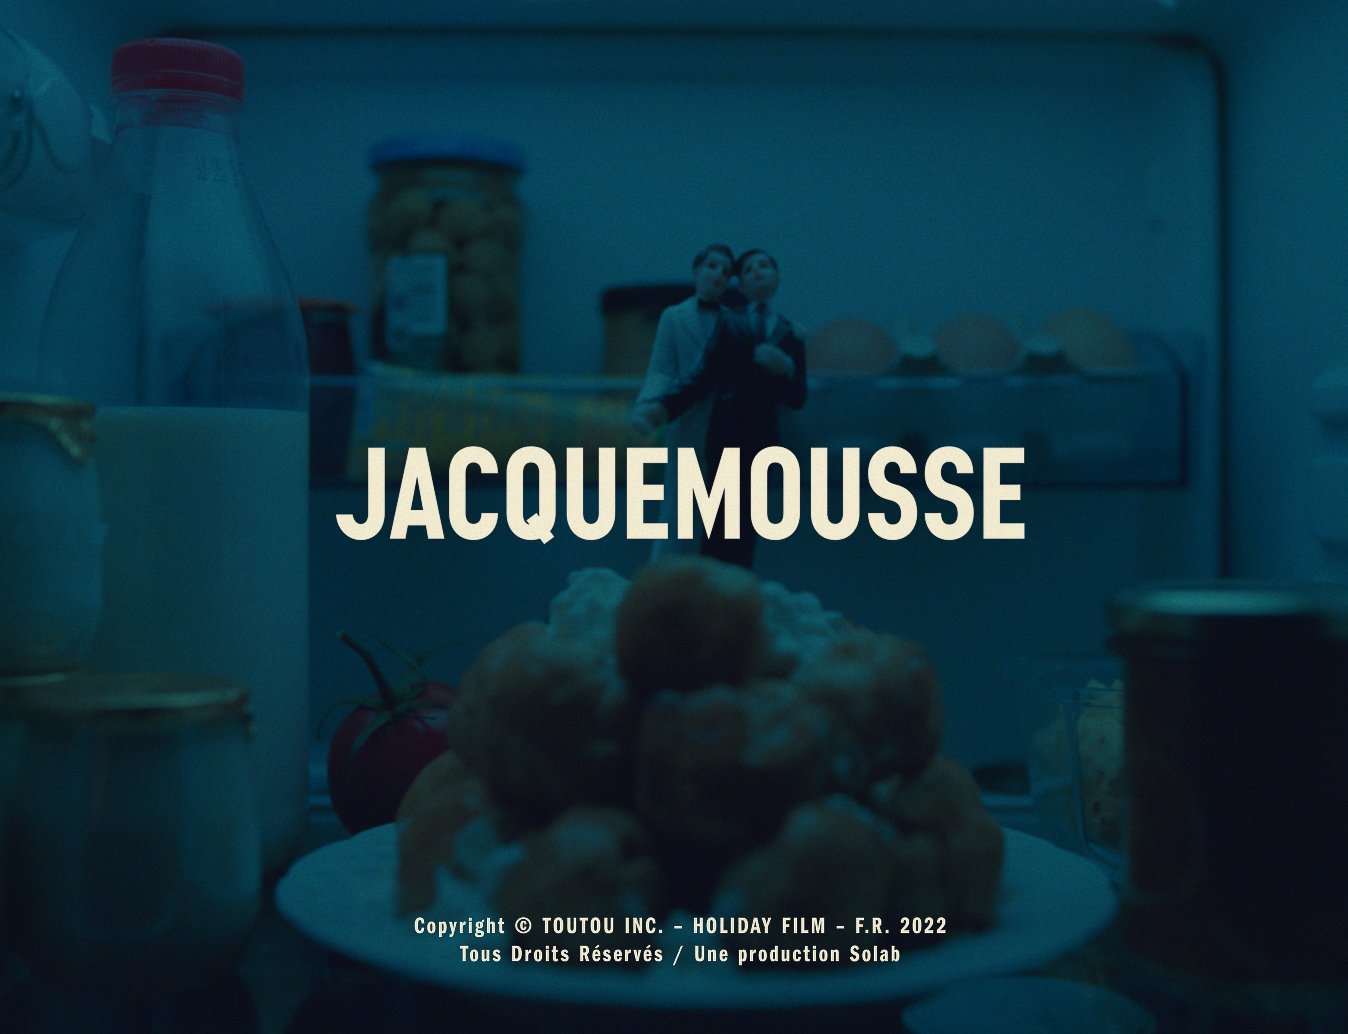 Jacquemus: "Jacquemousse"